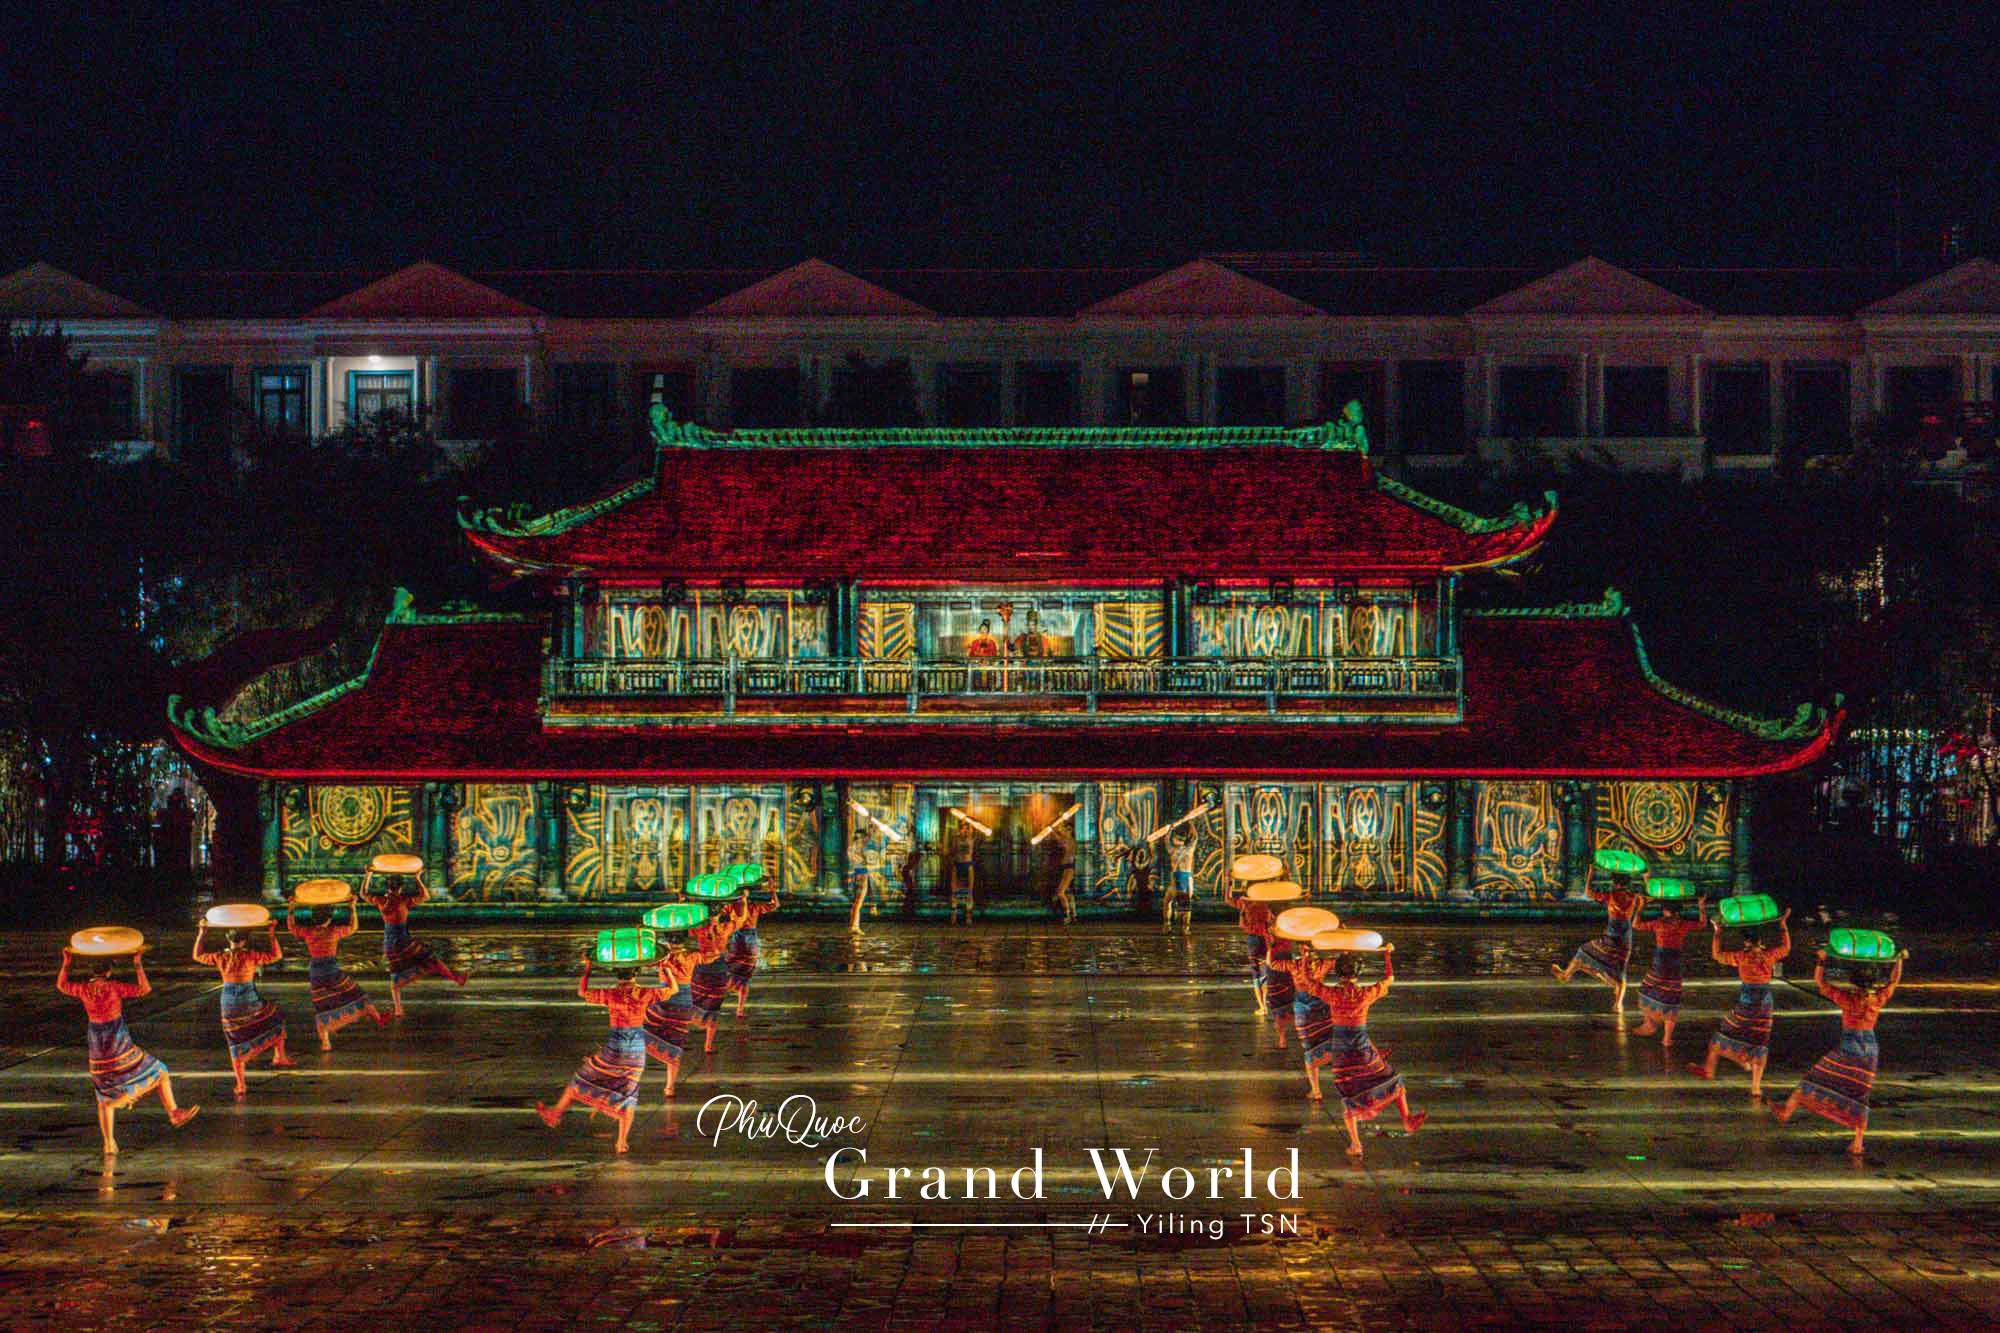 富國島景點｜富國大世界 Grand World Phu Quoc：奇幻運河富國島不夜城，主題景點表演總整理